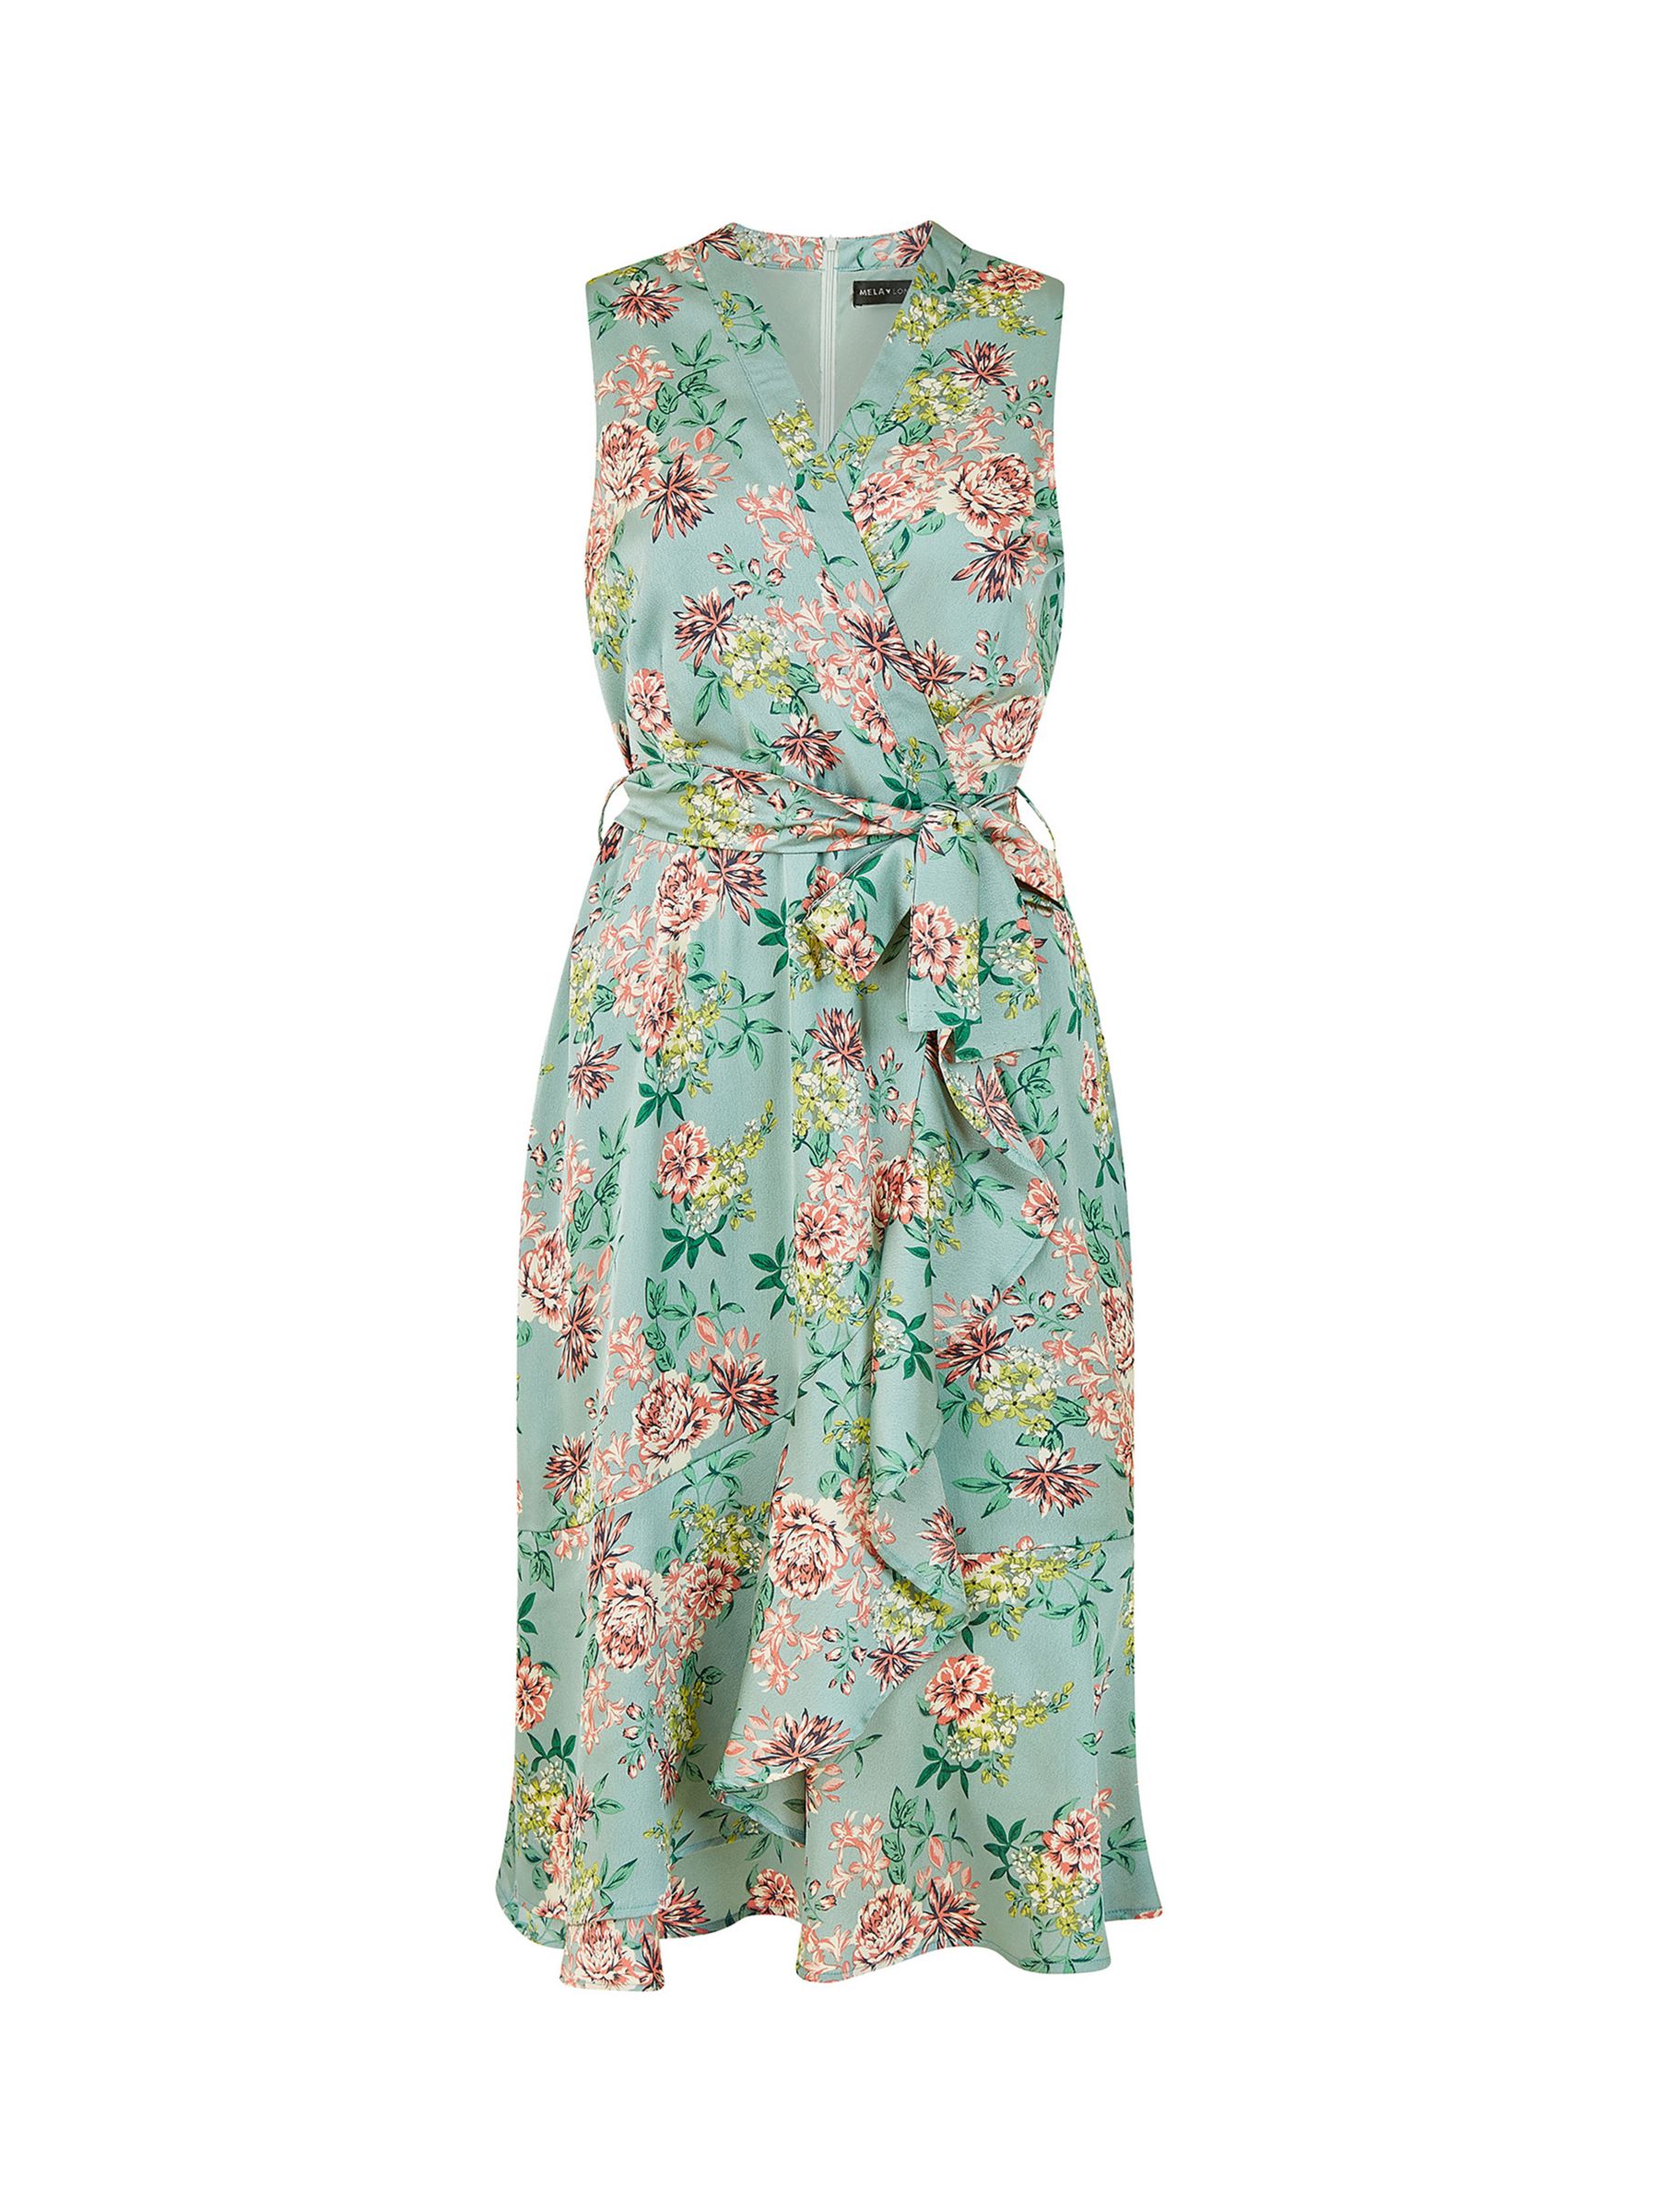 Yumi Mela London Floral Satin Wrap Dress, Green, 8